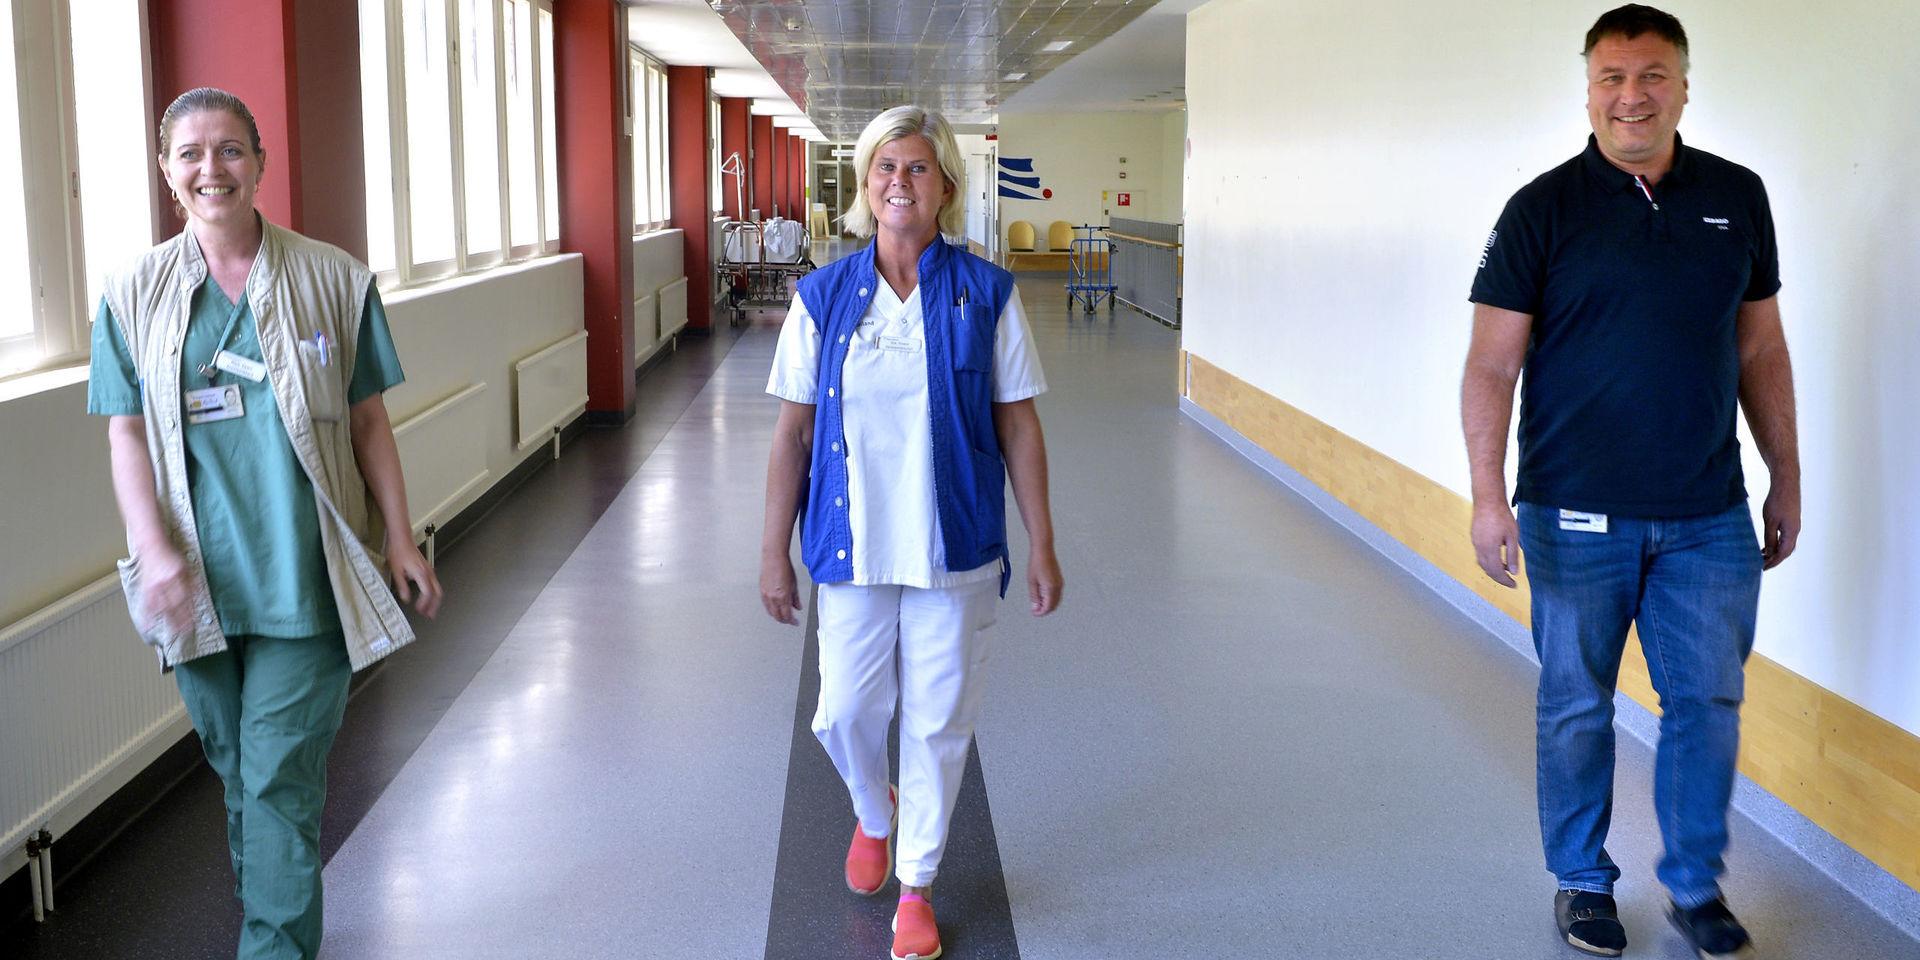 Maja Ewert, verksamhetschef för intensivvårdsavdelningen, Eva Osvald, chef för medicinkliniken och Jonas Hultgren, chef för akuten vid sjukhuset i Varberg har under de senaste månaderna ställts inför en helt ny vardag där de fått många nya lärdomar och insikter.